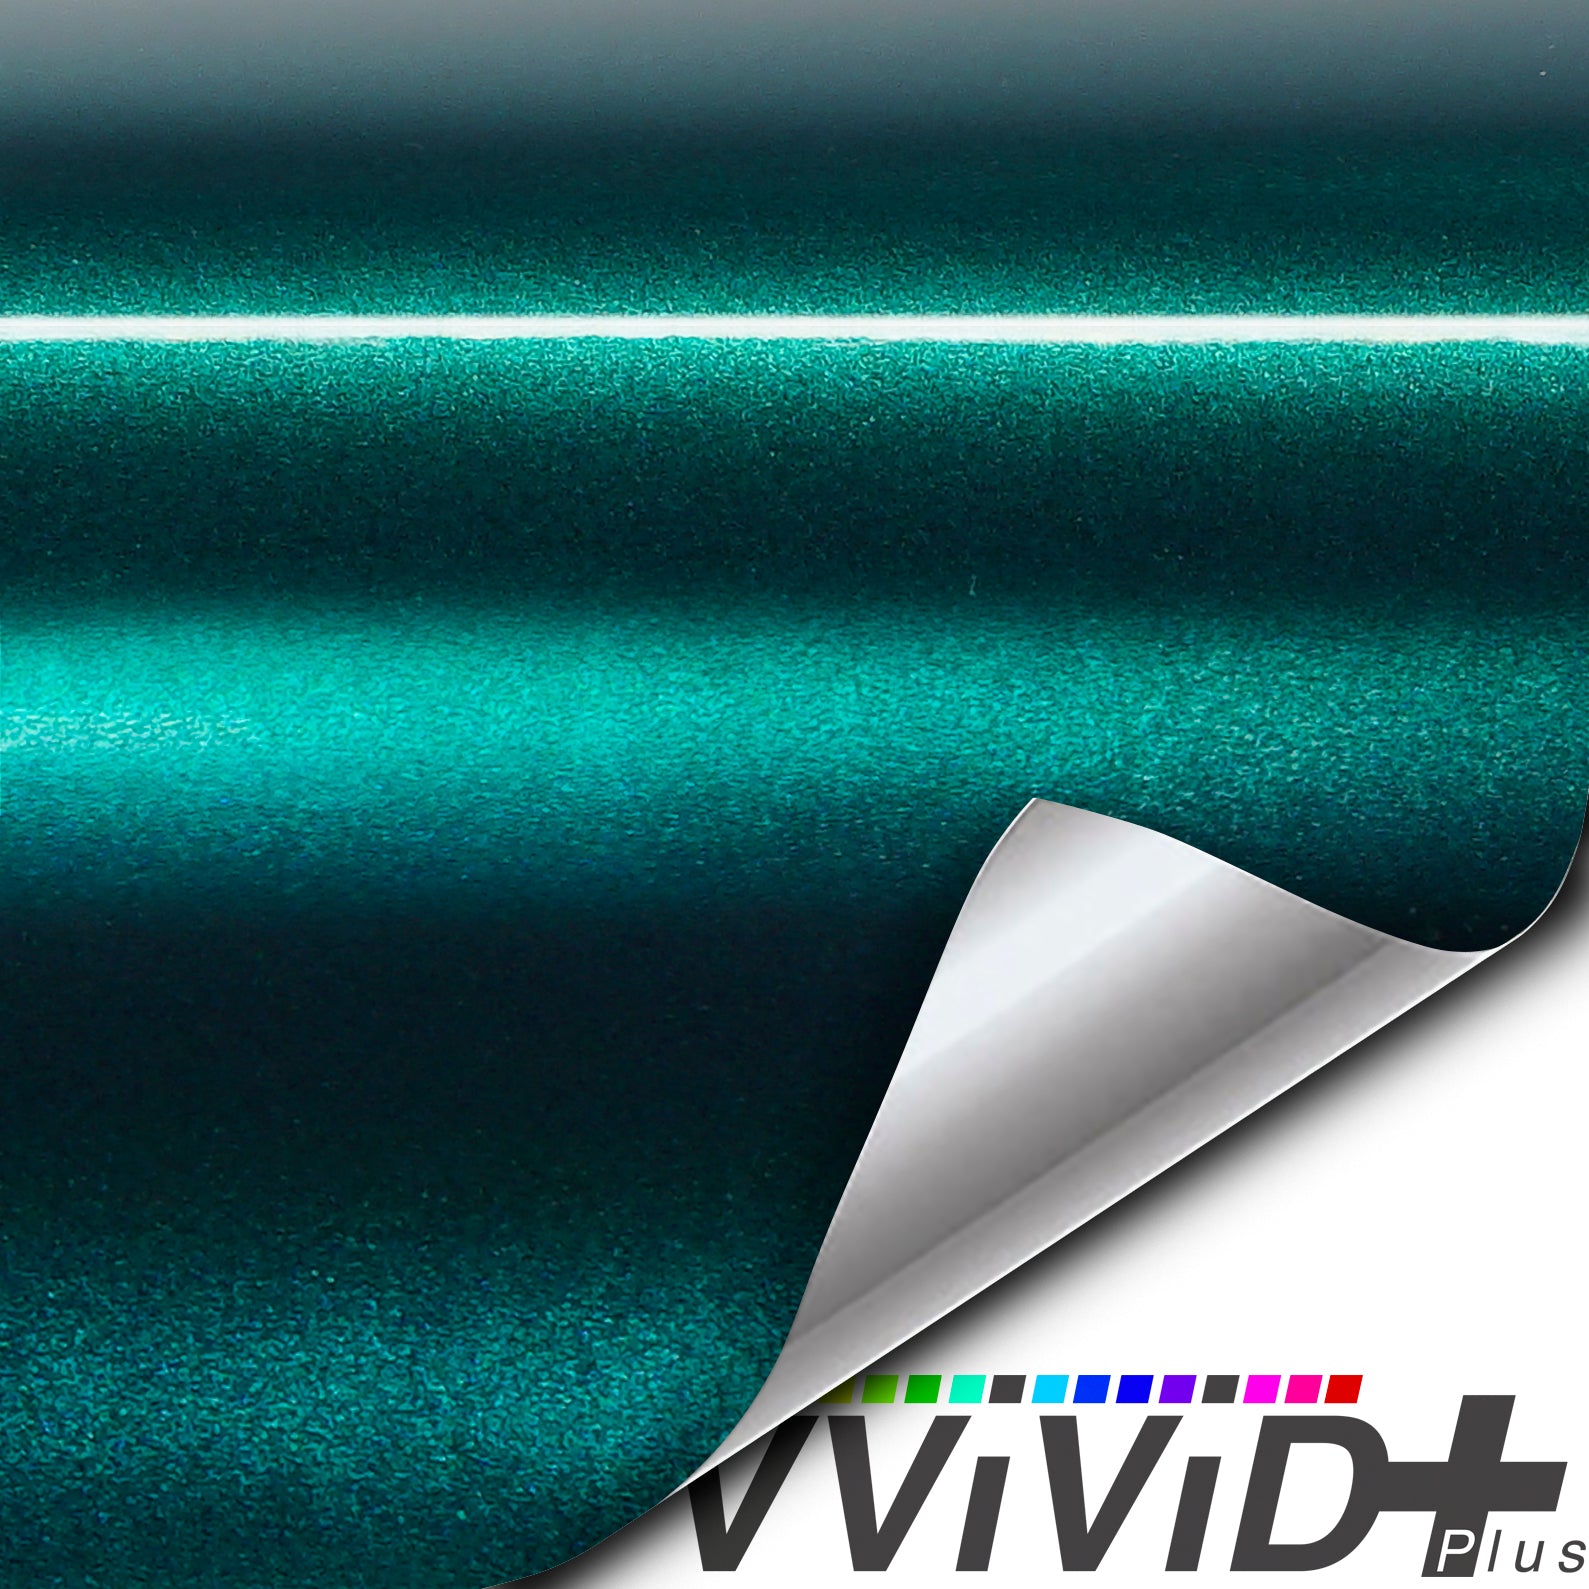  VViViD Gloss Chrome Blue Vinyl Wrap Adhesive Film 12